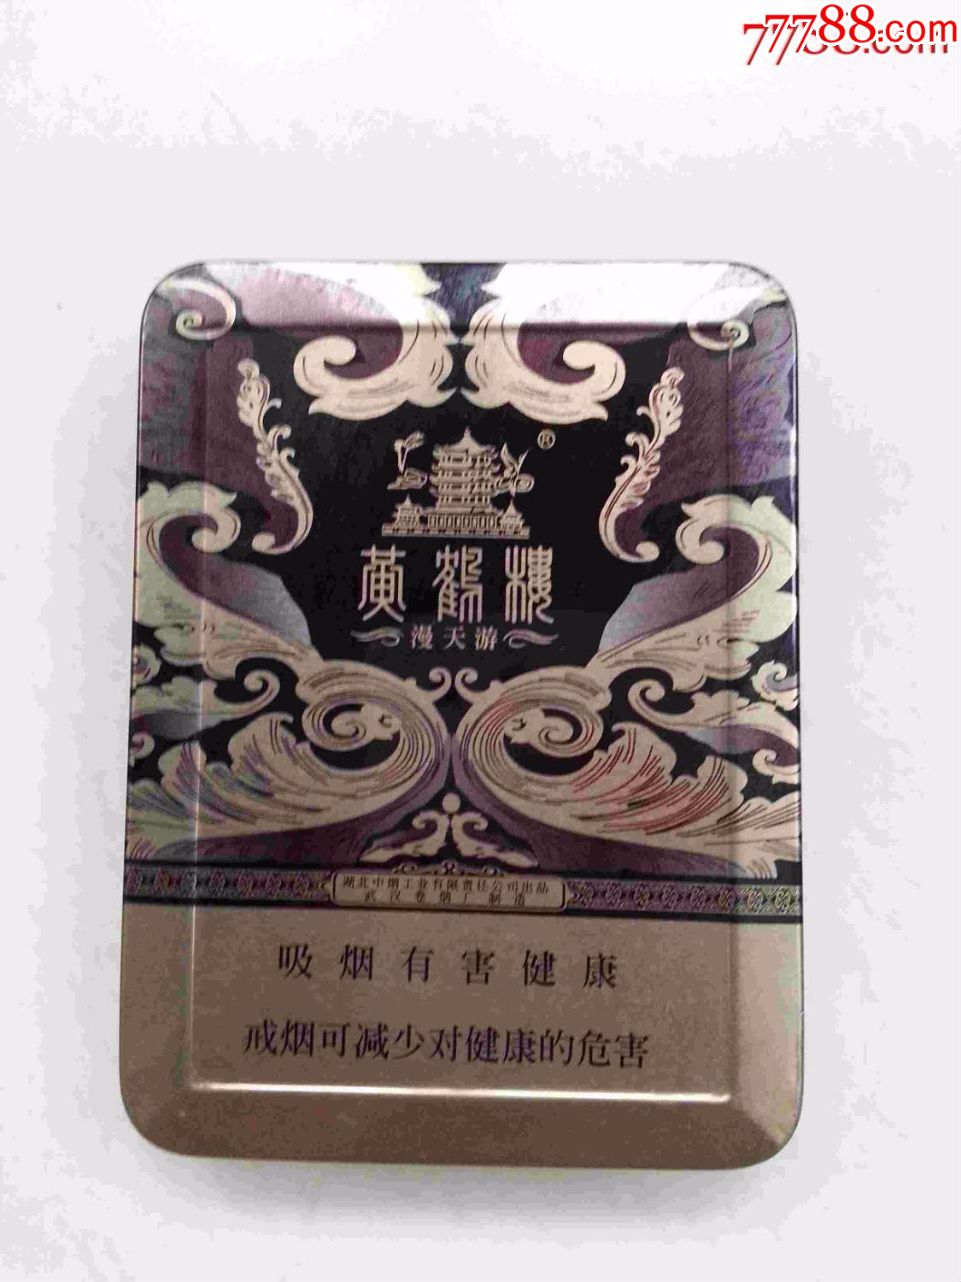 湖北黄鹤楼(漫天游)烟盒